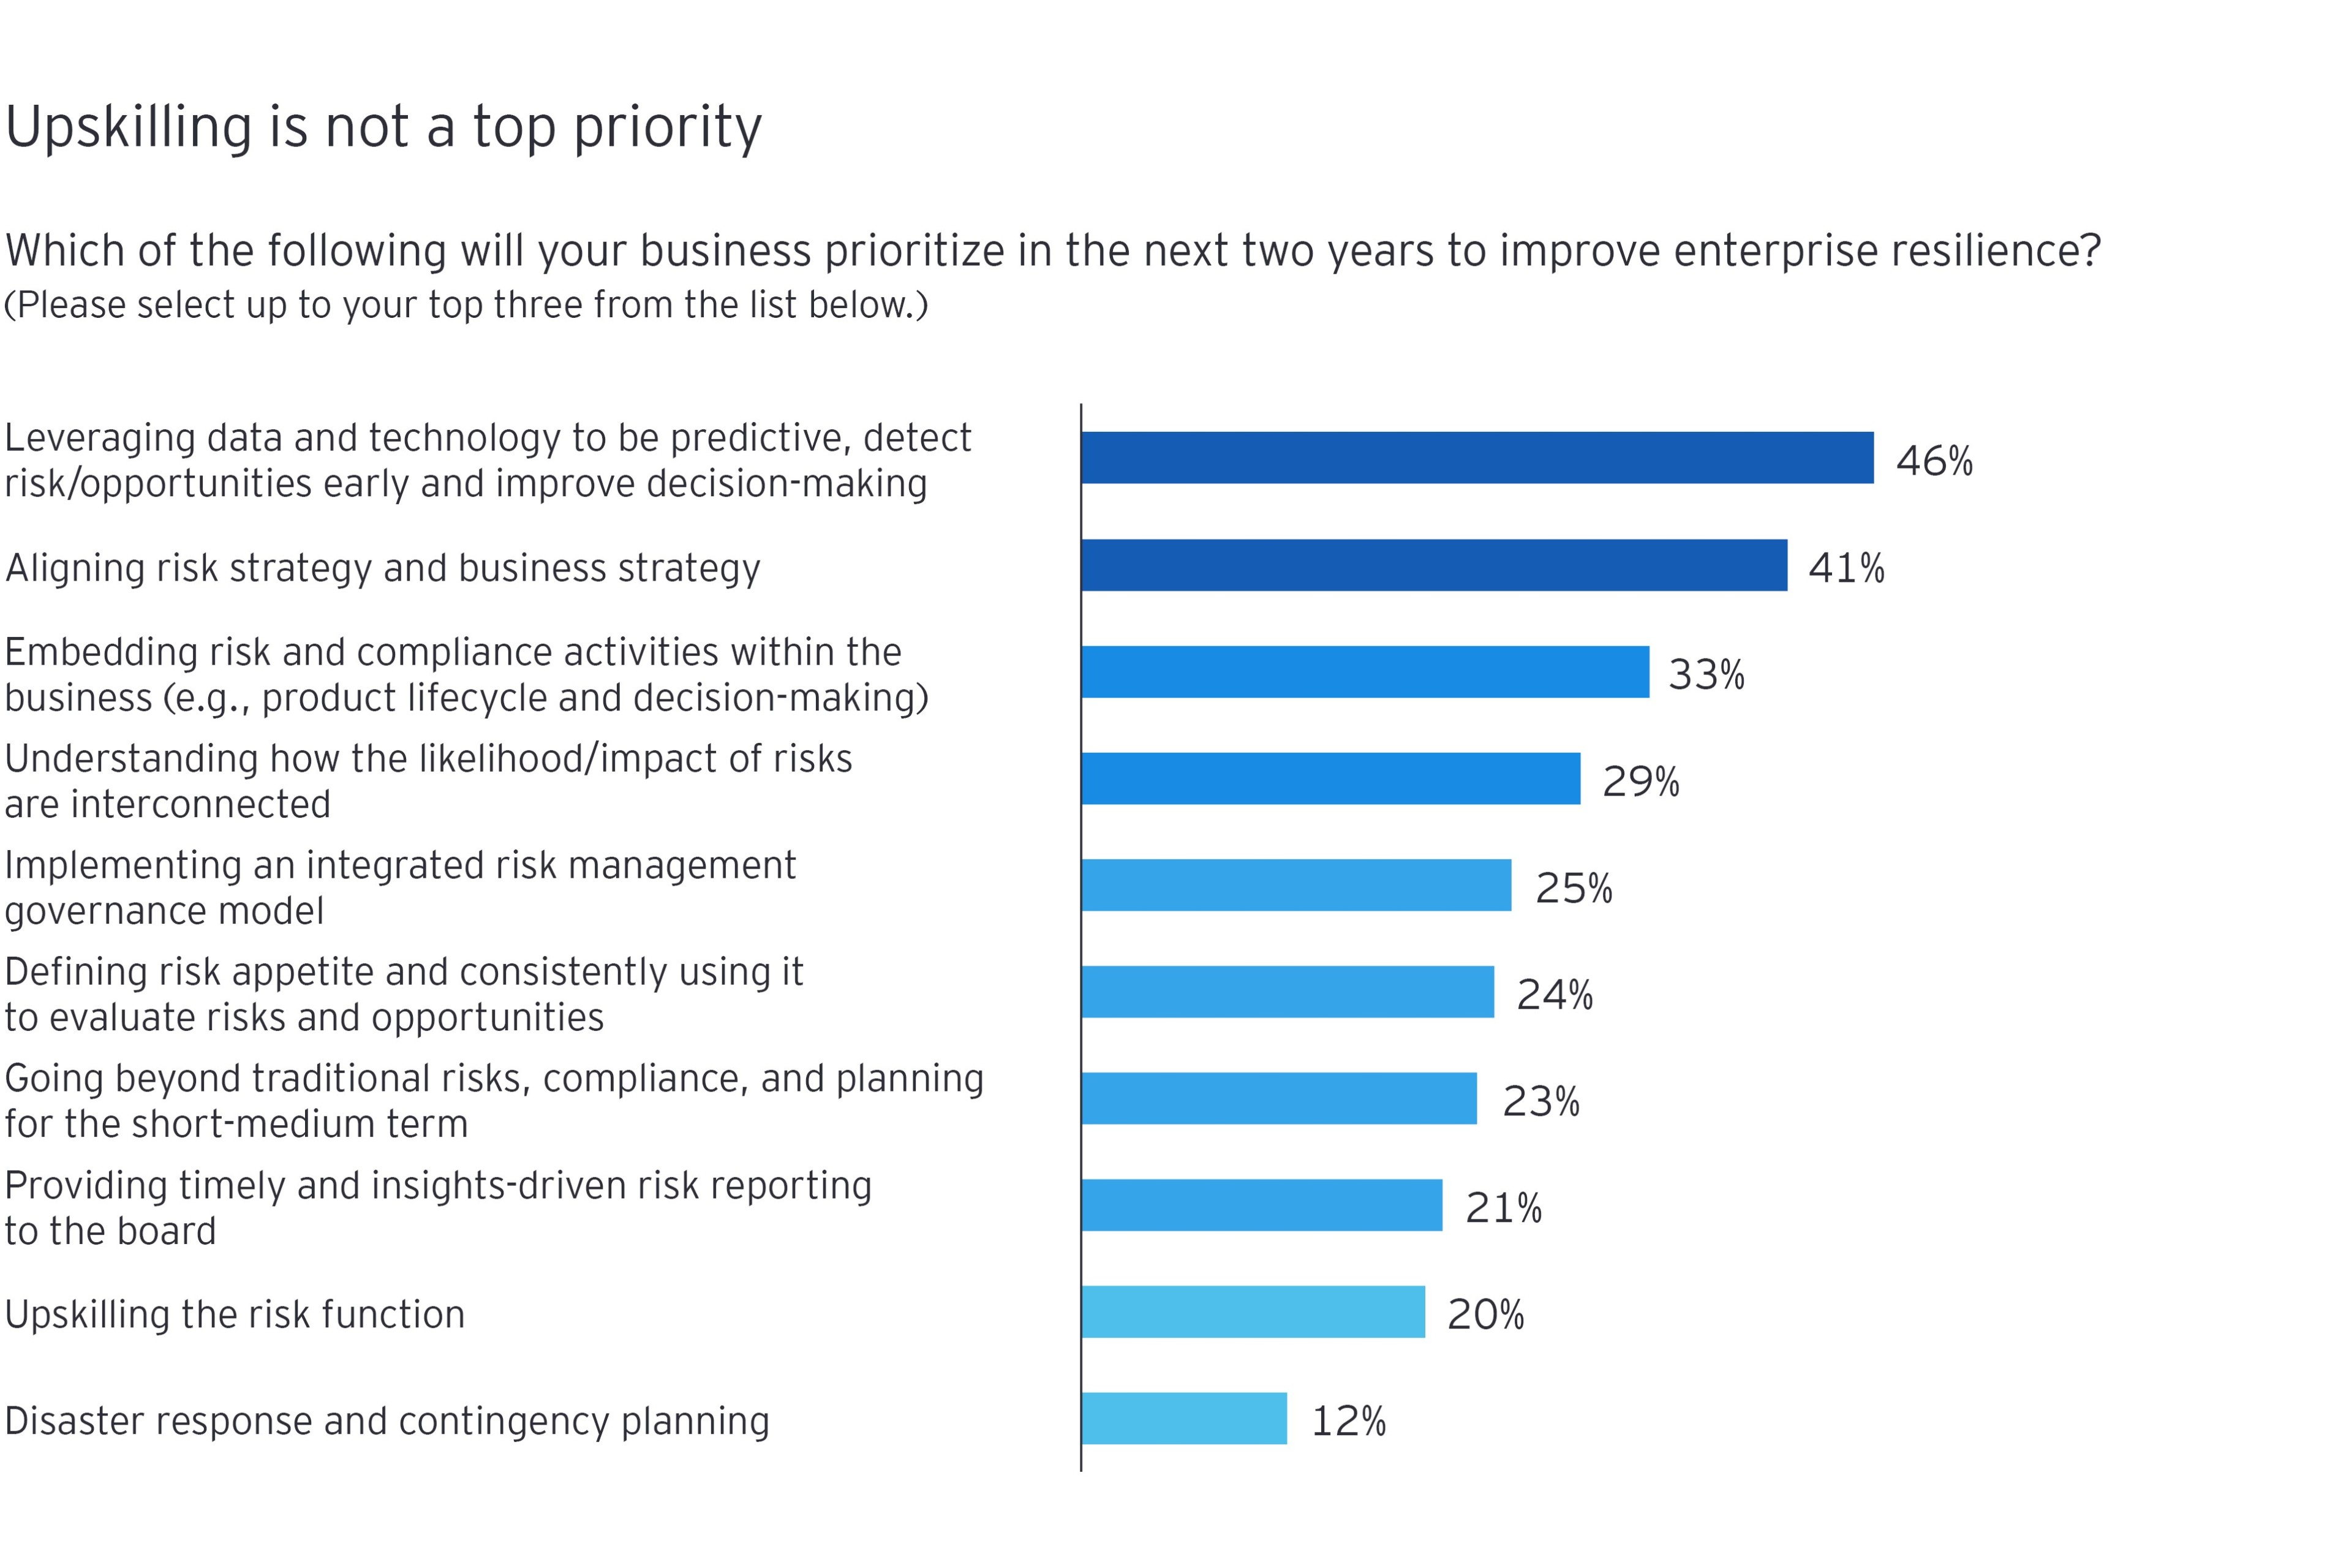 Gráfico que destaca las principales respuestas de la encuesta a "¿A cuál de los siguientes aspectos dará prioridad su empresa en los próximos dos años para mejorar la resiliencia de la empresa?"